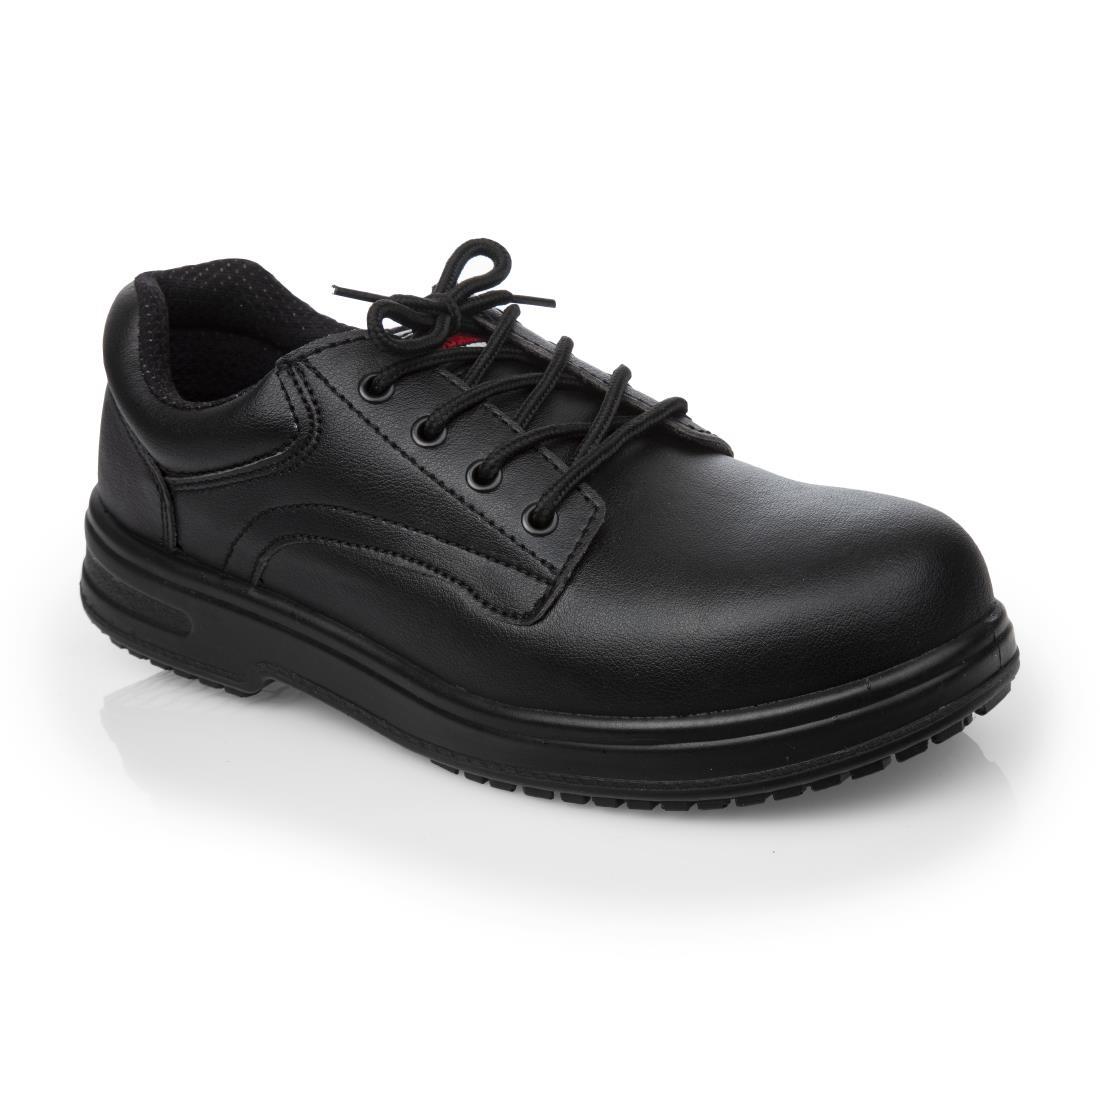 Slipbuster Basic Toe Cap Safety Shoes Black 47 - BB497-47  - 1